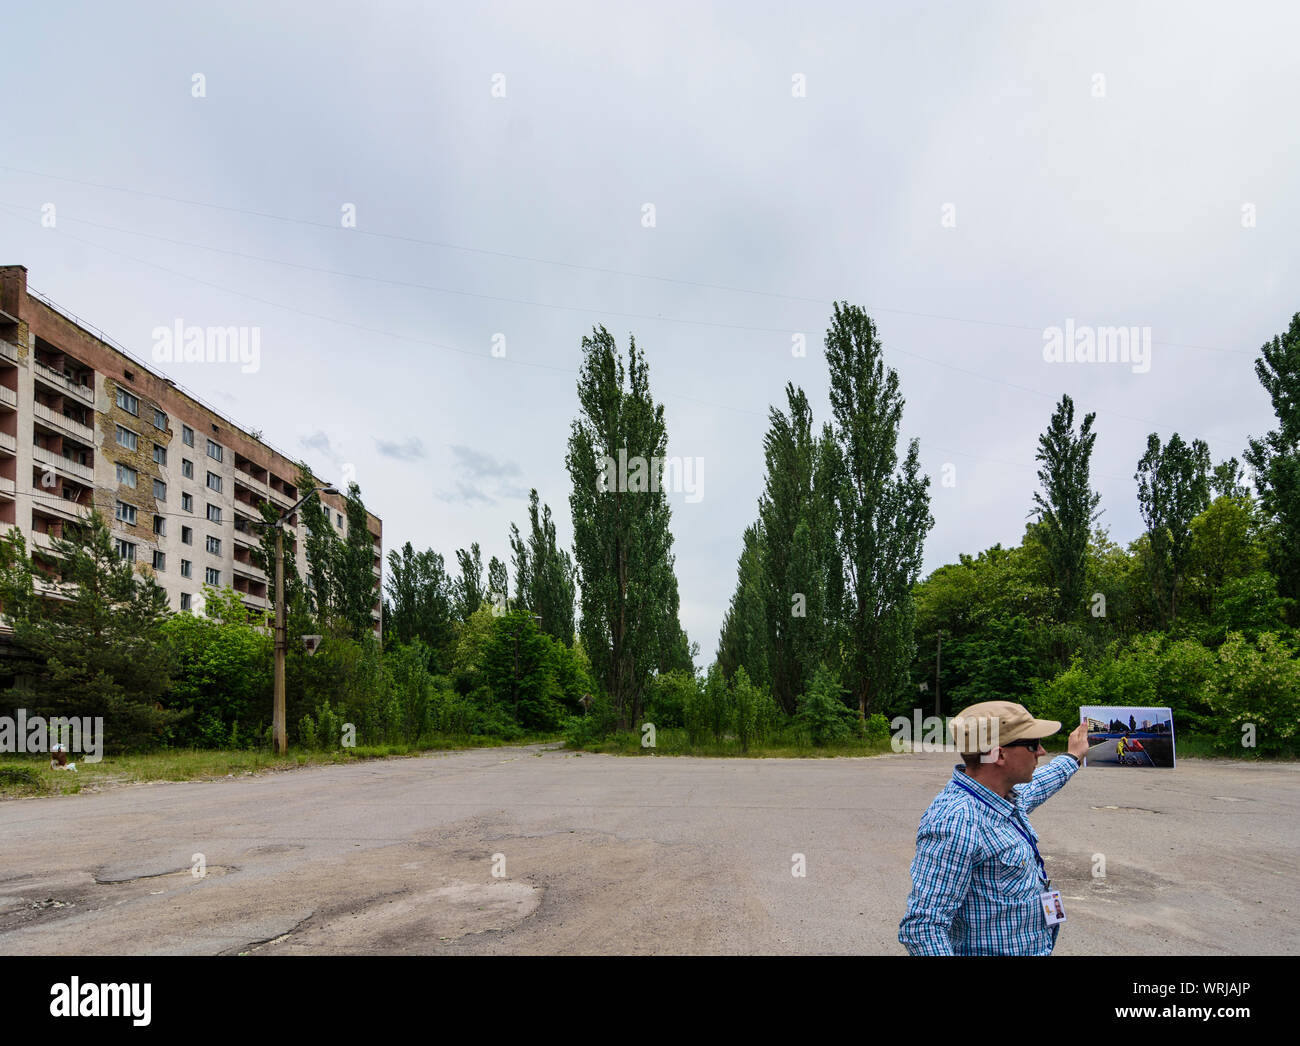 Pripyat (prypjat): verlassene Häuser, Guide zeigt ein Bild der ursprünglichen Blick in Tschernobyl (Tschernobyl) Ausschluss Zone, Kiev Oblast, Ukraine Stockfoto